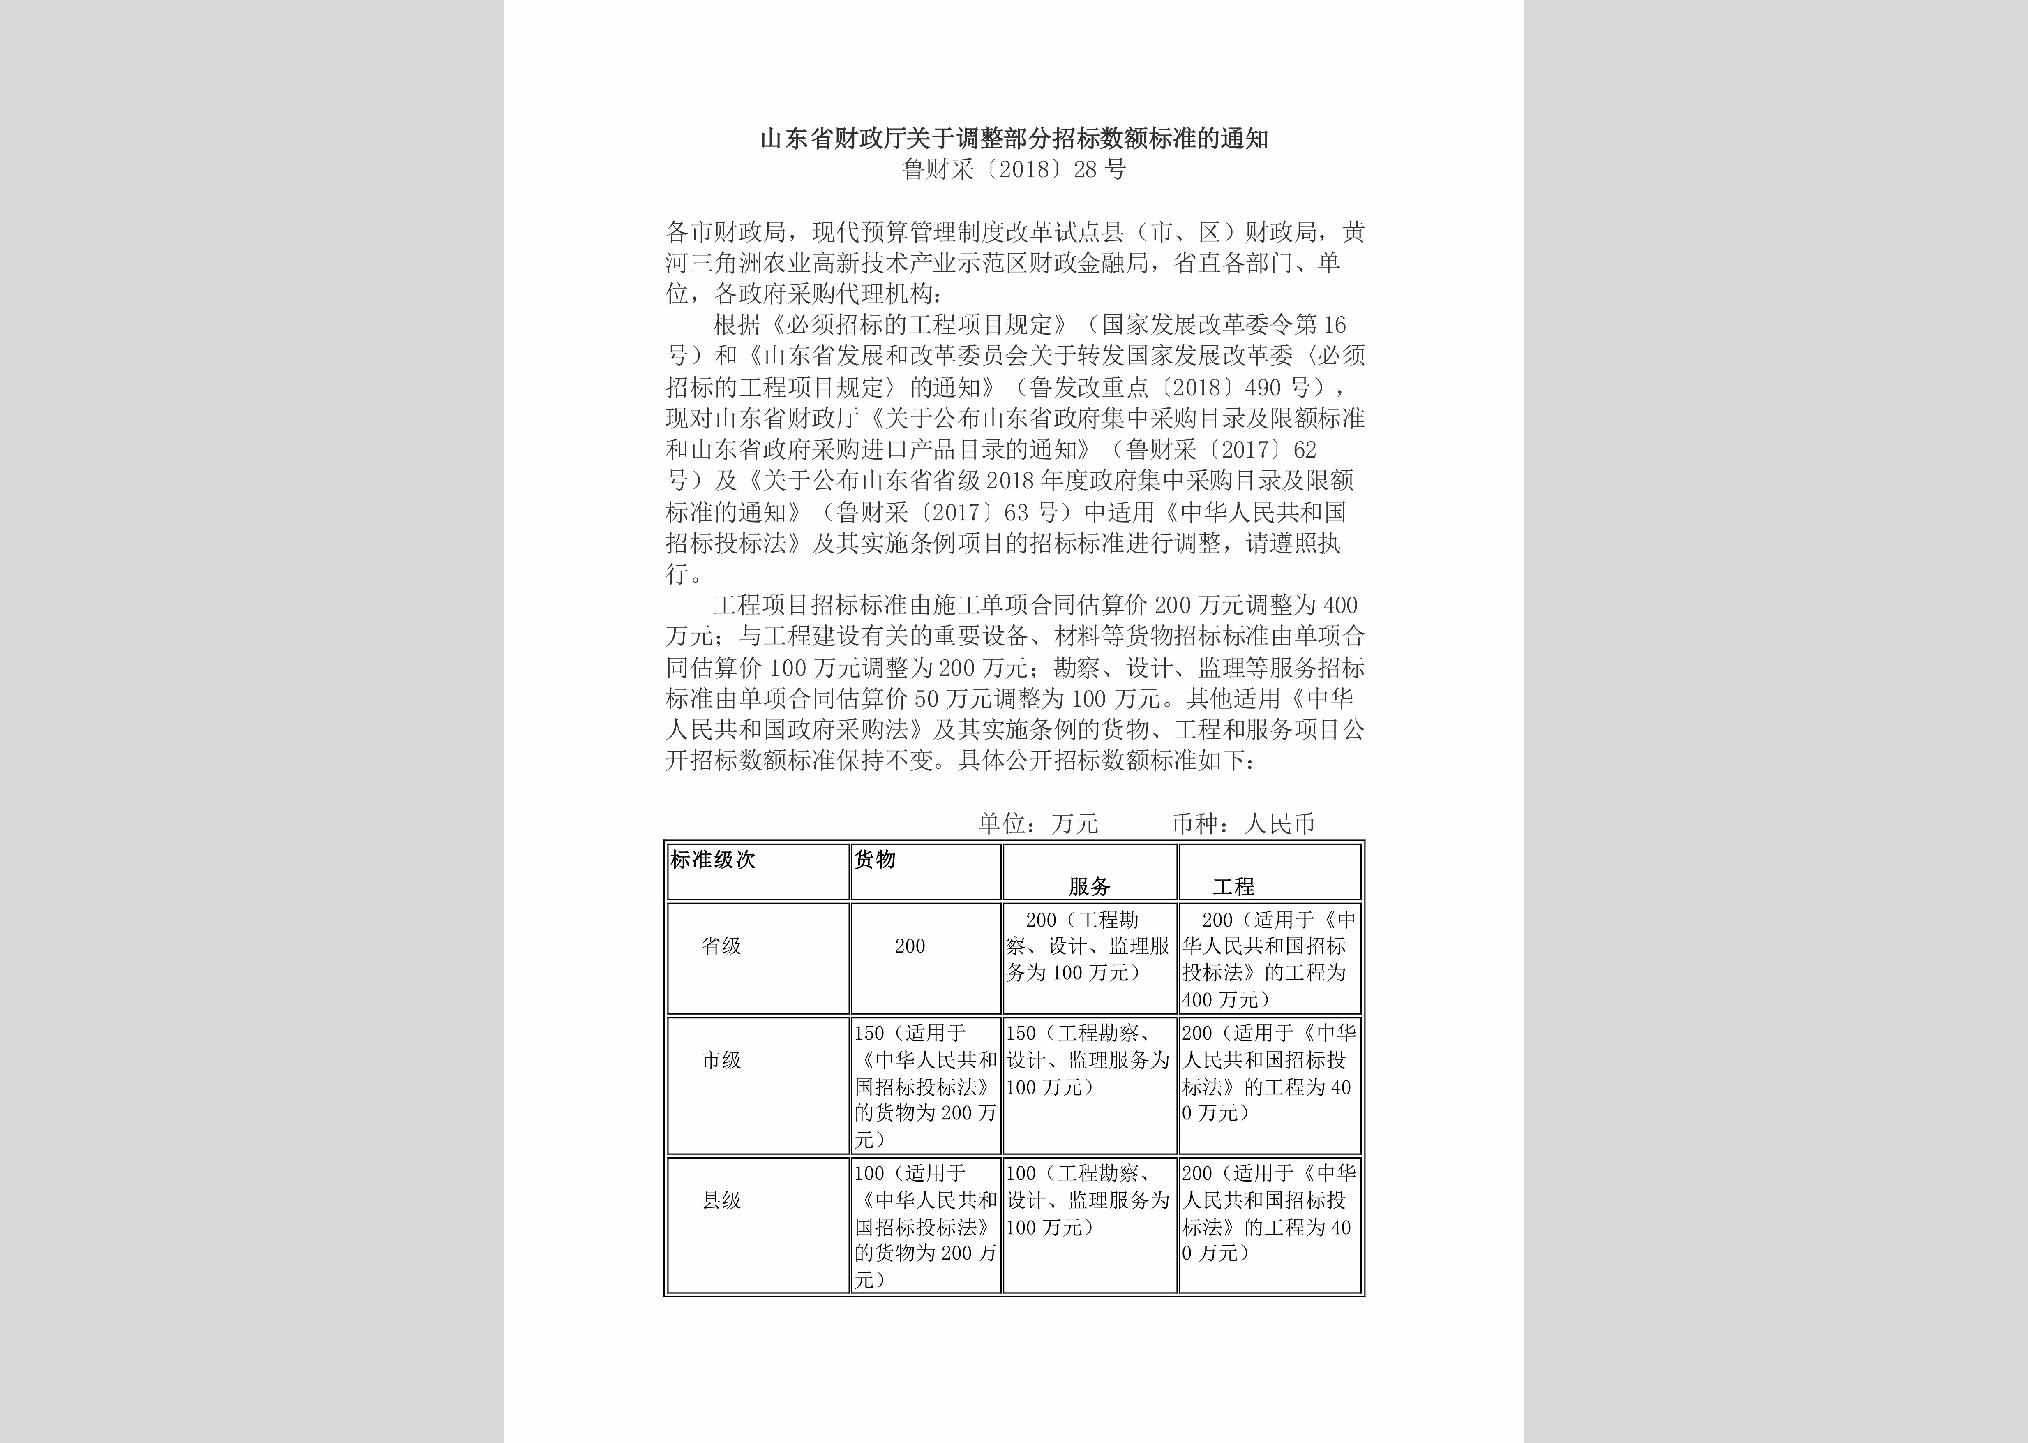 鲁财采[2018]28号：山东省财政厅关于调整部分招标数额标准的通知